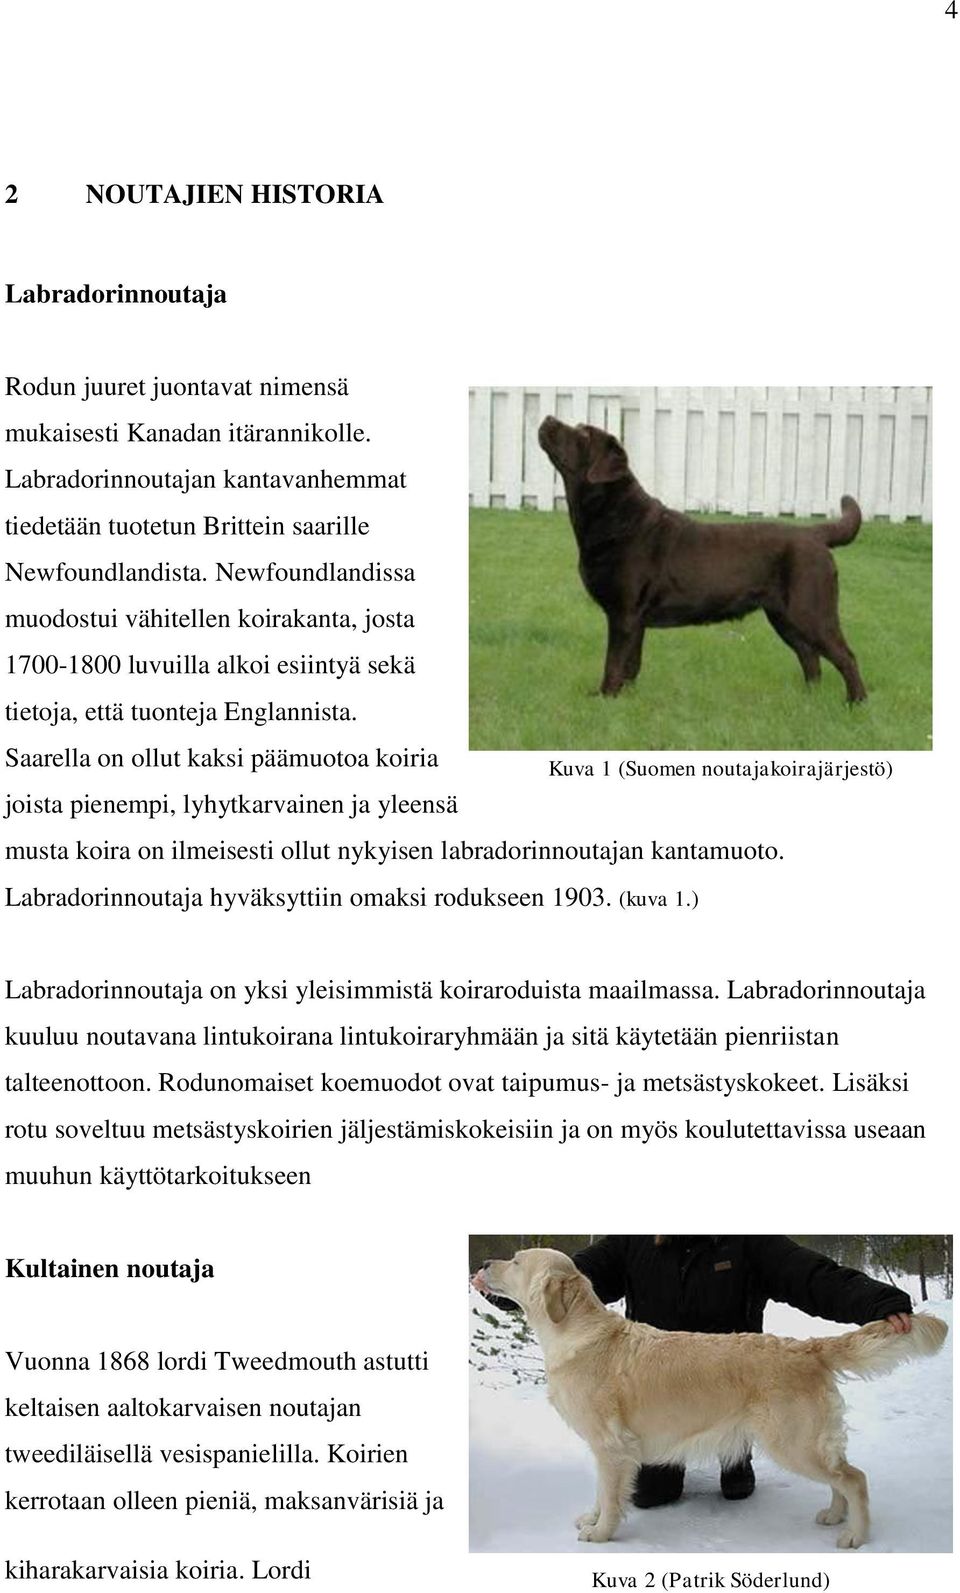 Saarella on ollut kaksi päämuotoa koiria joista pienempi, lyhytkarvainen ja yleensä Kuva 1 (Suomen noutajakoirajärjestö) musta koira on ilmeisesti ollut nykyisen labradorinnoutajan kantamuoto.